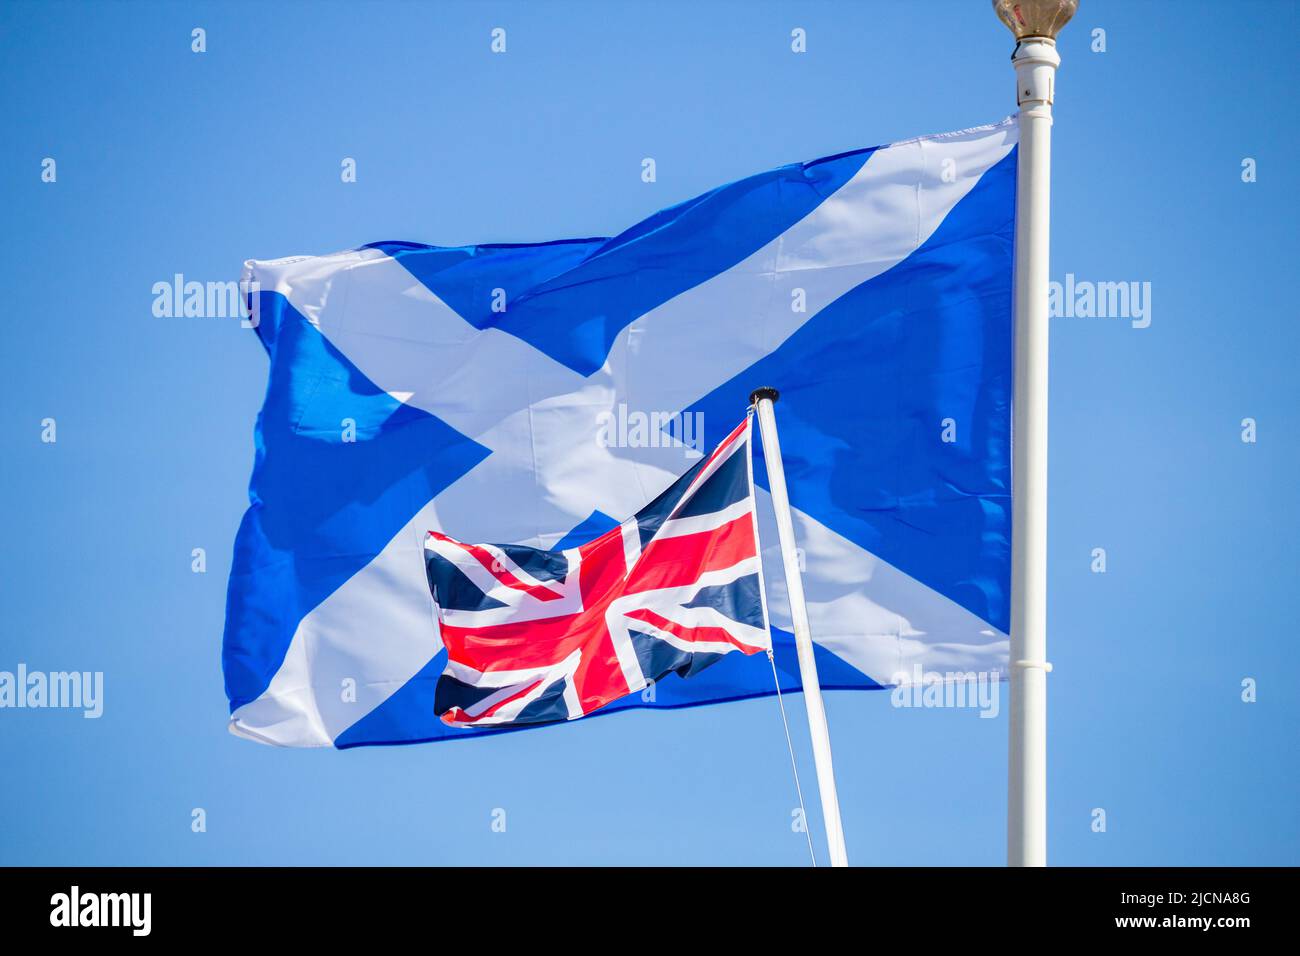 Indipendenza della Scozia, confine duro... immagine concettuale Foto Stock